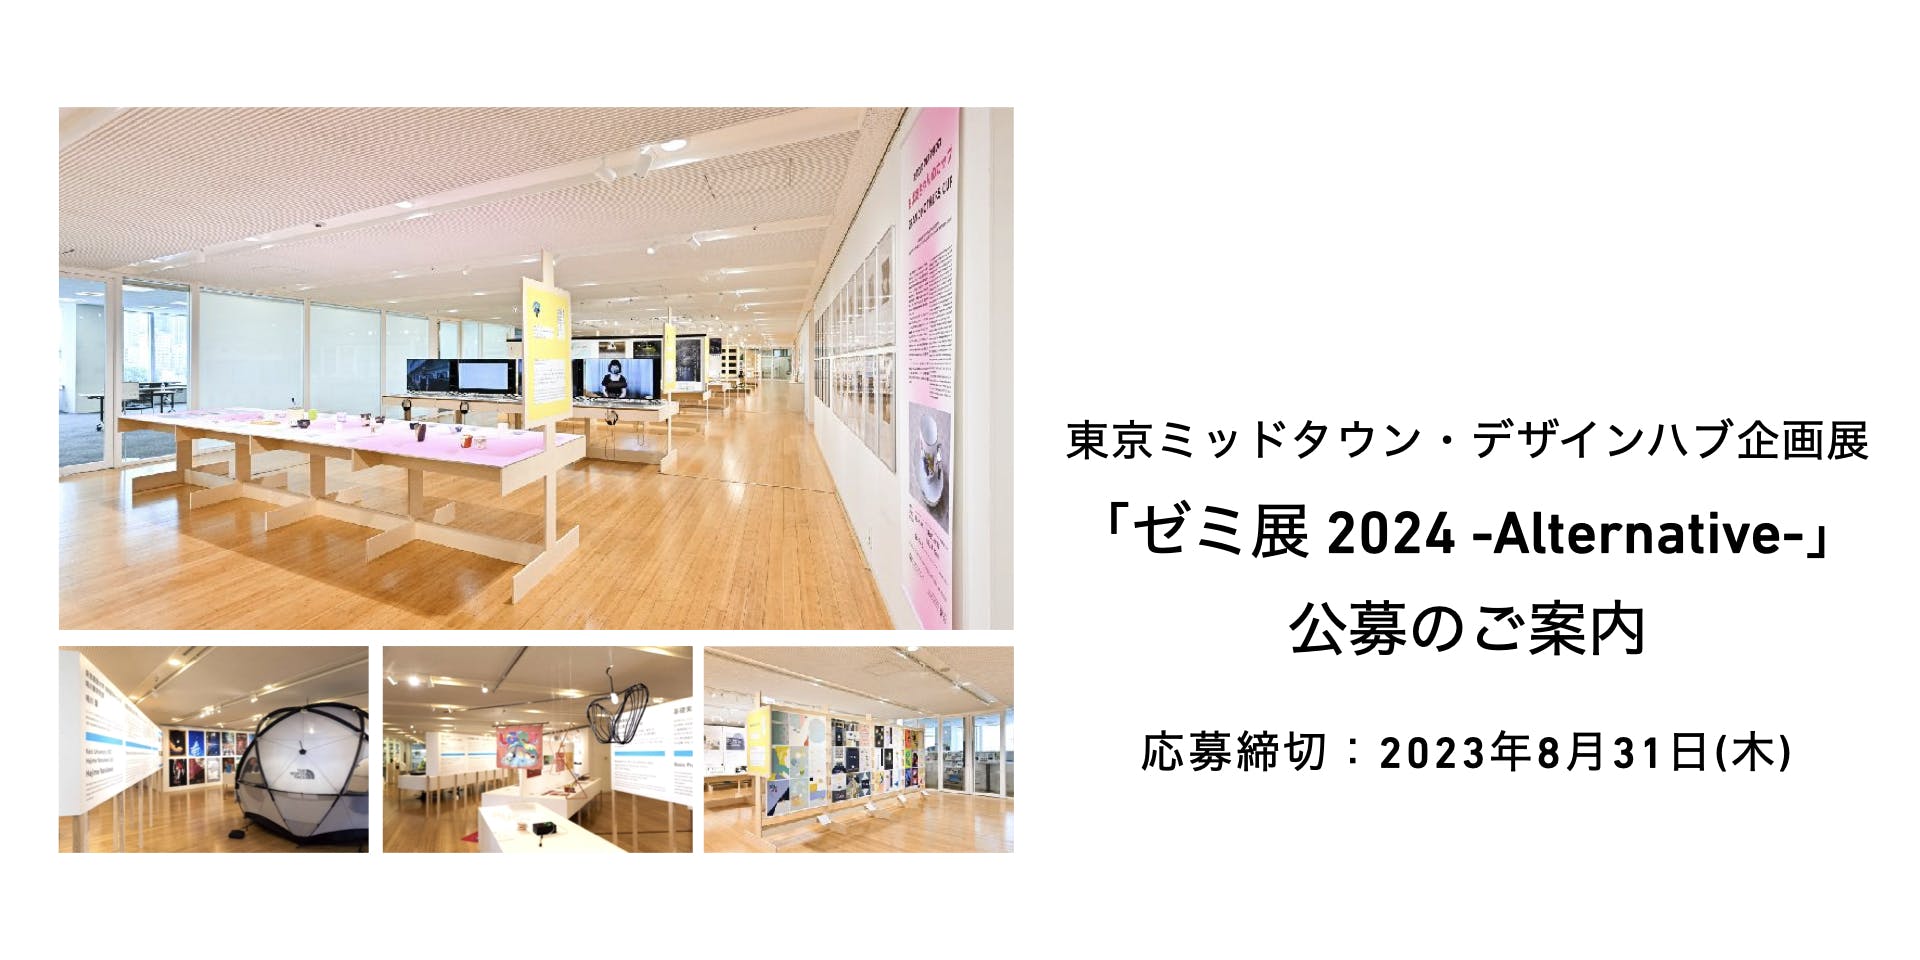 東京ミッドタウン・デザインハブ企画展「ゼミ展 2024 -Alternative-」 出展校4ゼミ・クラスを公募します 